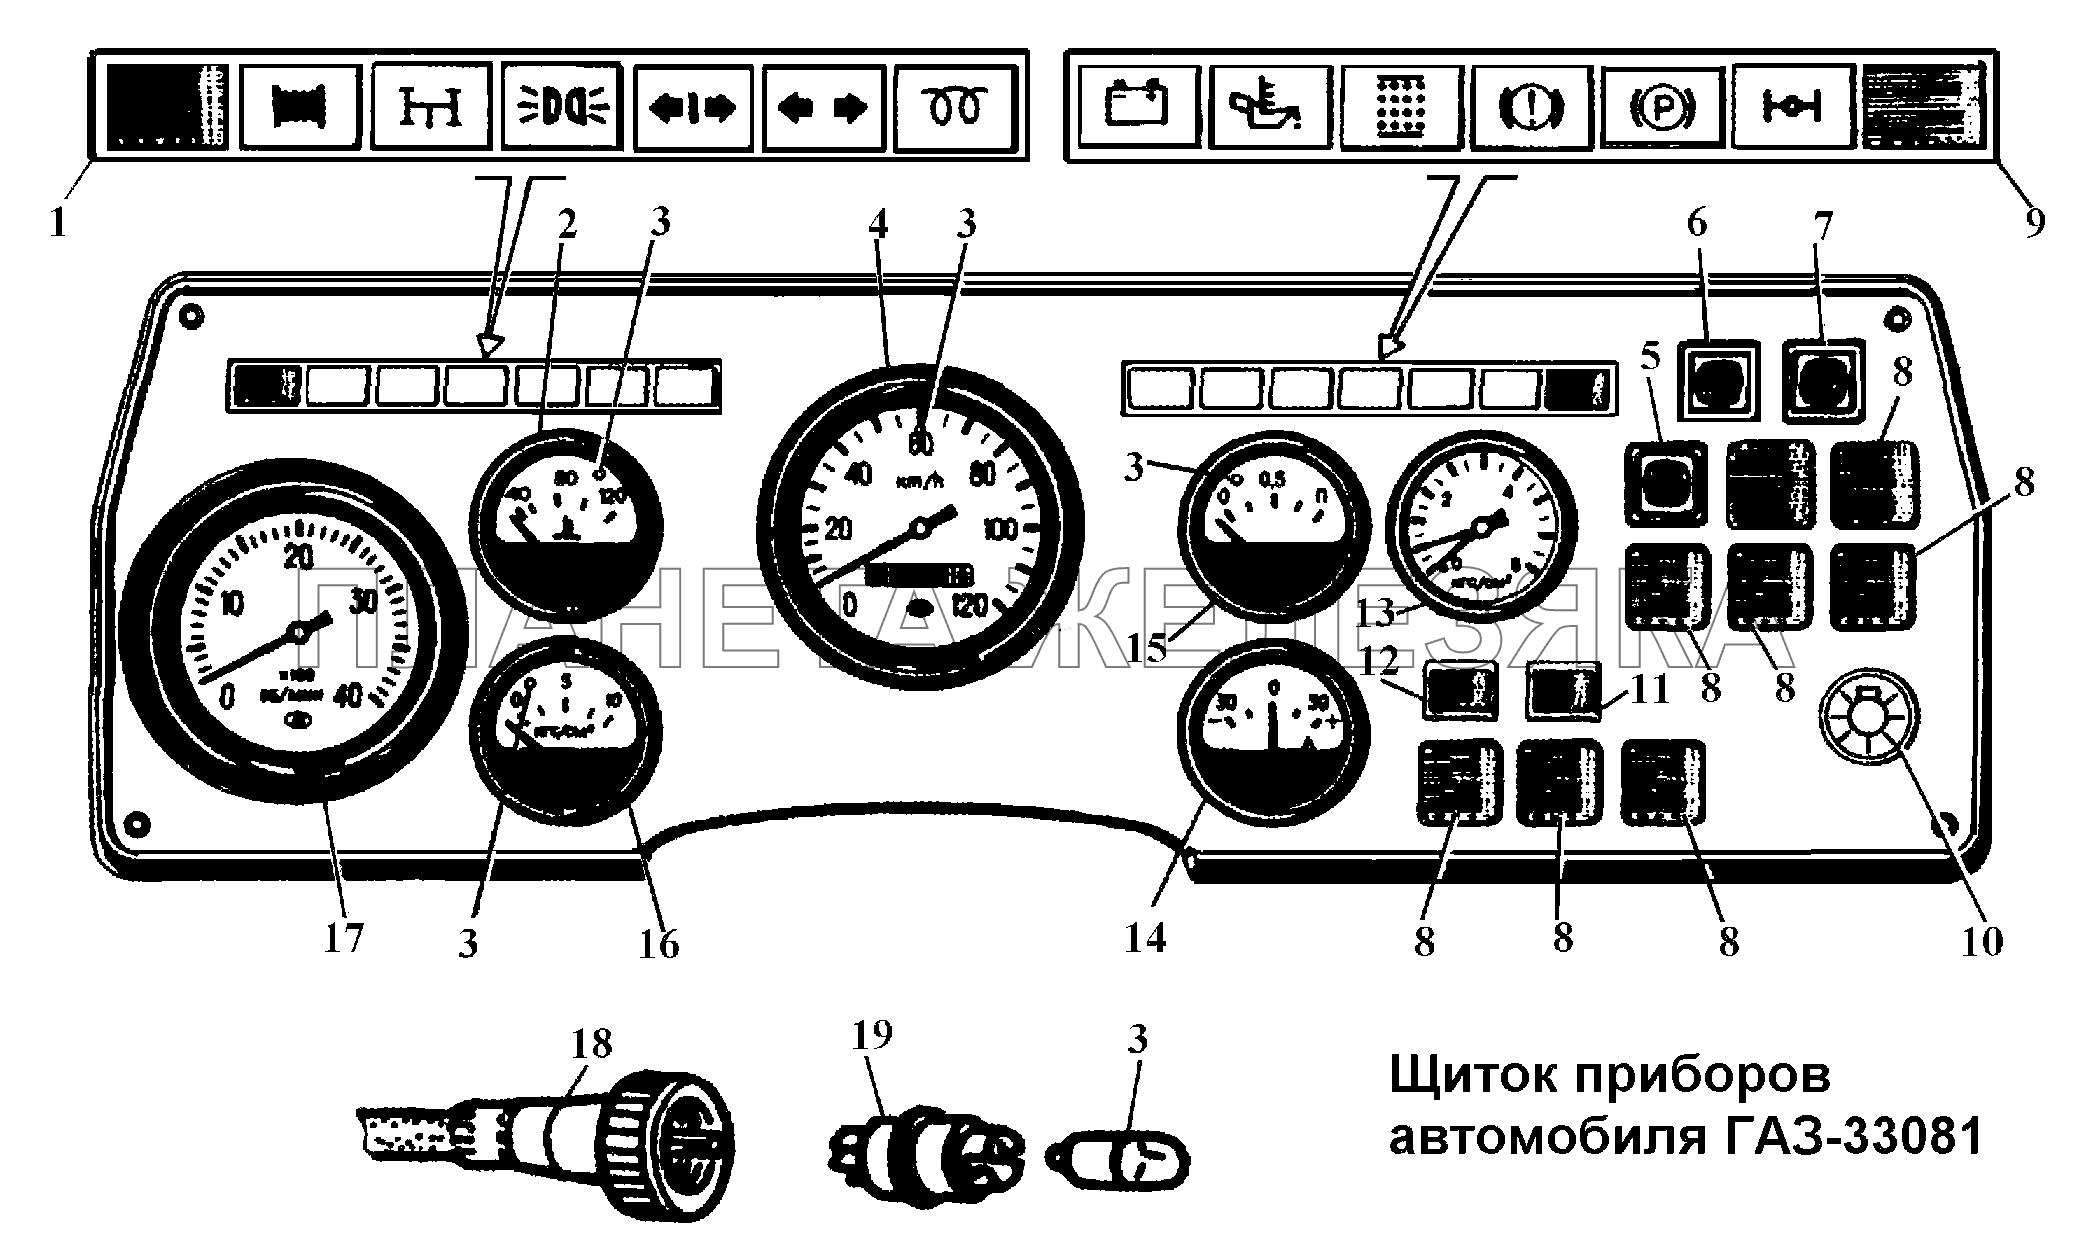 Щиток приборов автомобиля ГАЗ-33081 ГАЗ-3308